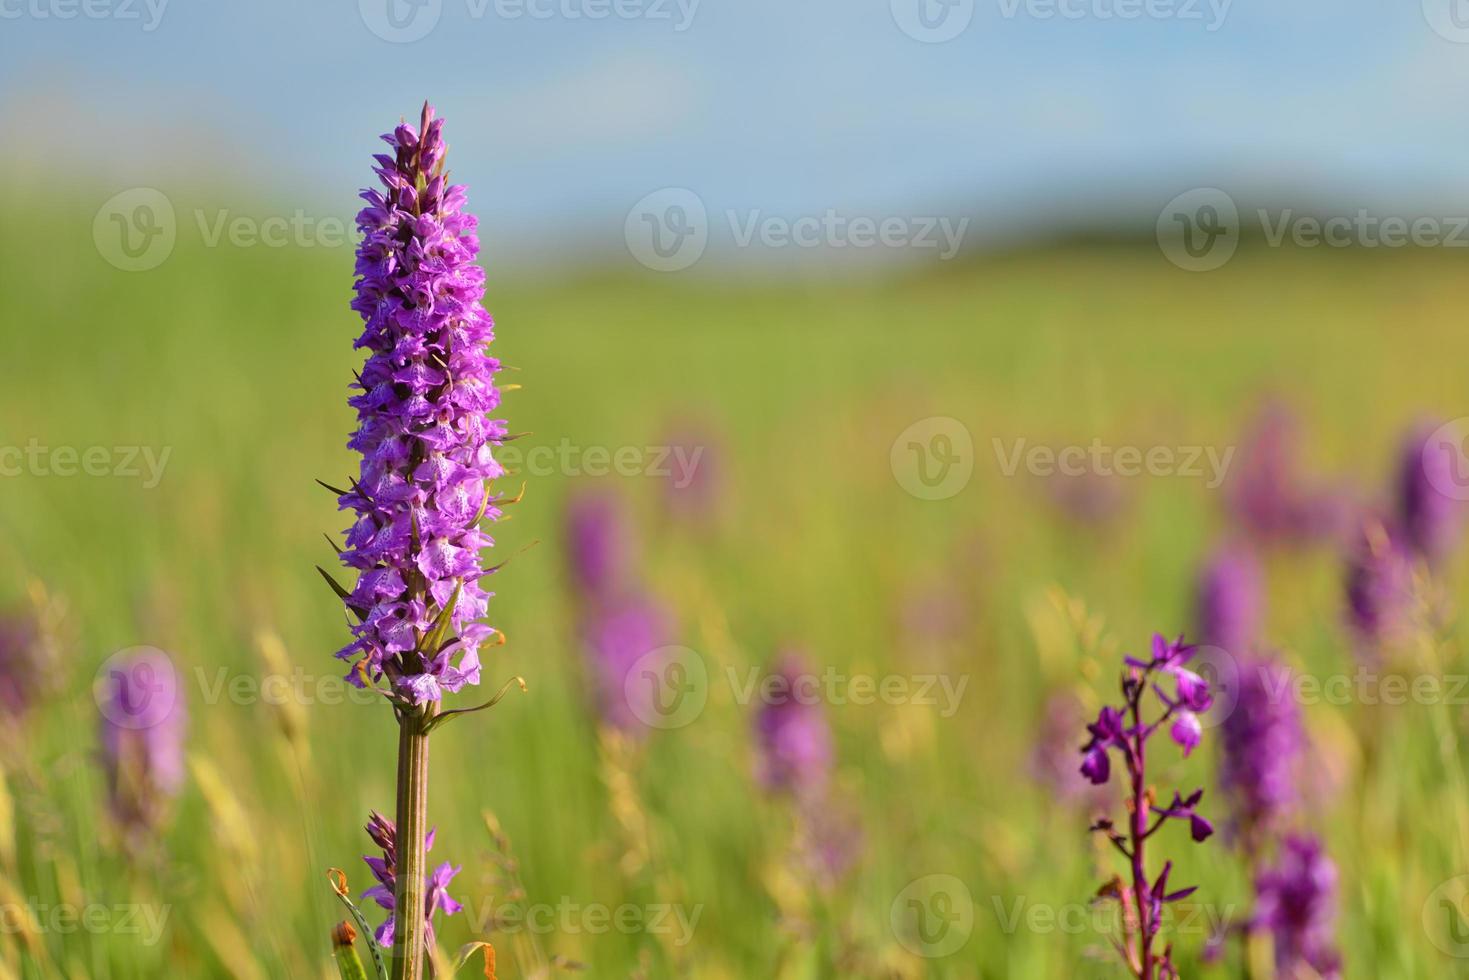 Southern Marsh Orchid Jersey Regno Unito Macro Immagine Di Primavera Marsh Wildflowers foto